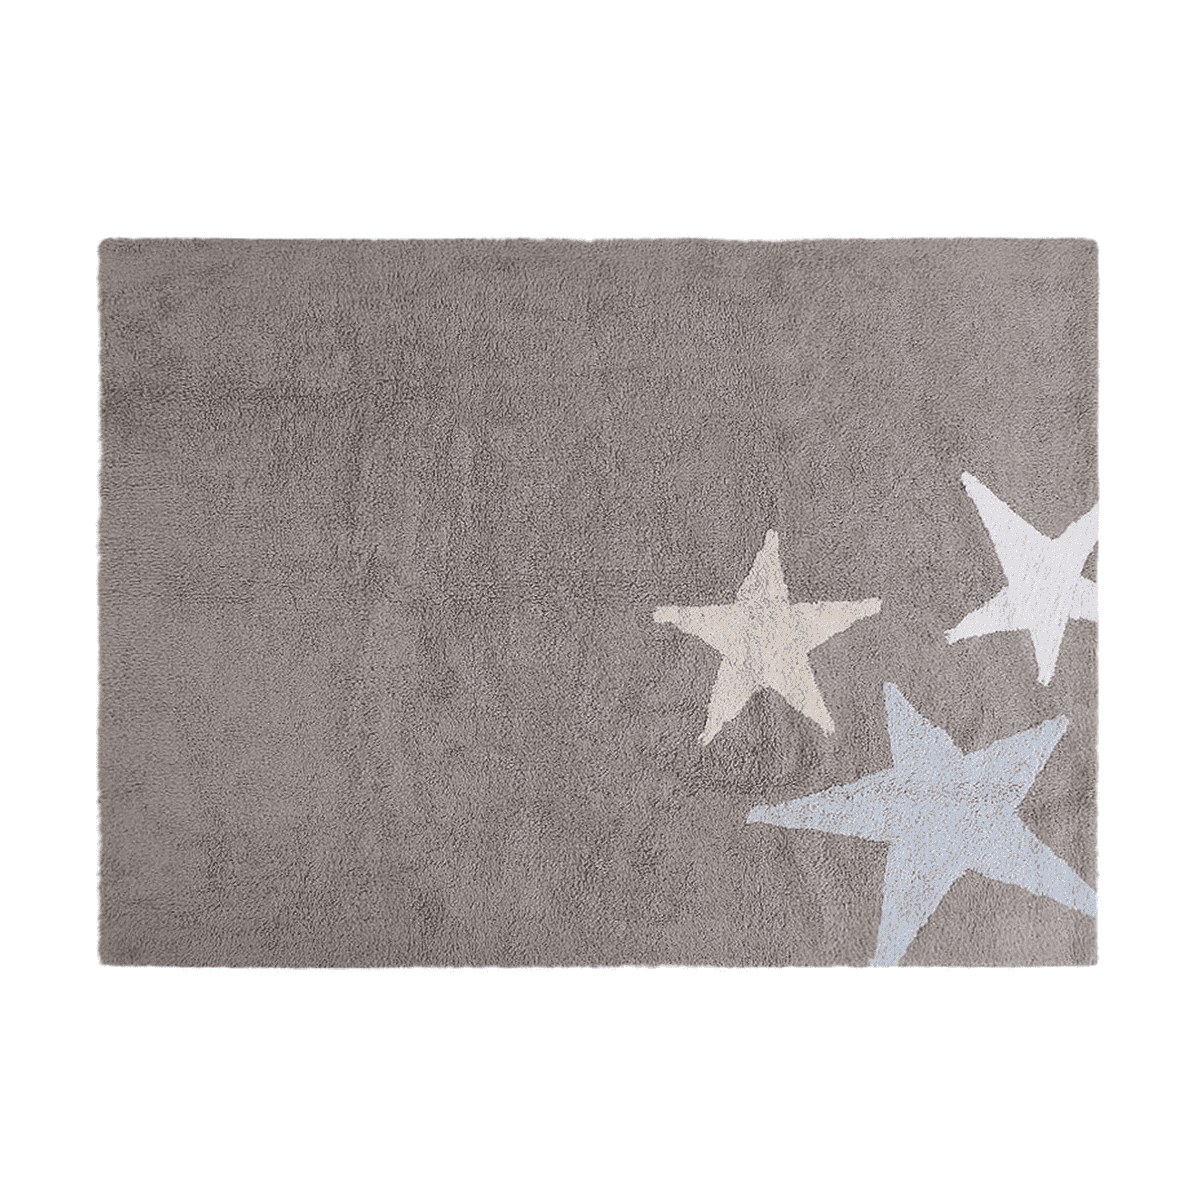 Tapis coton motif 3 étoiles tricolore gris- jaune -bleu 120x160cm